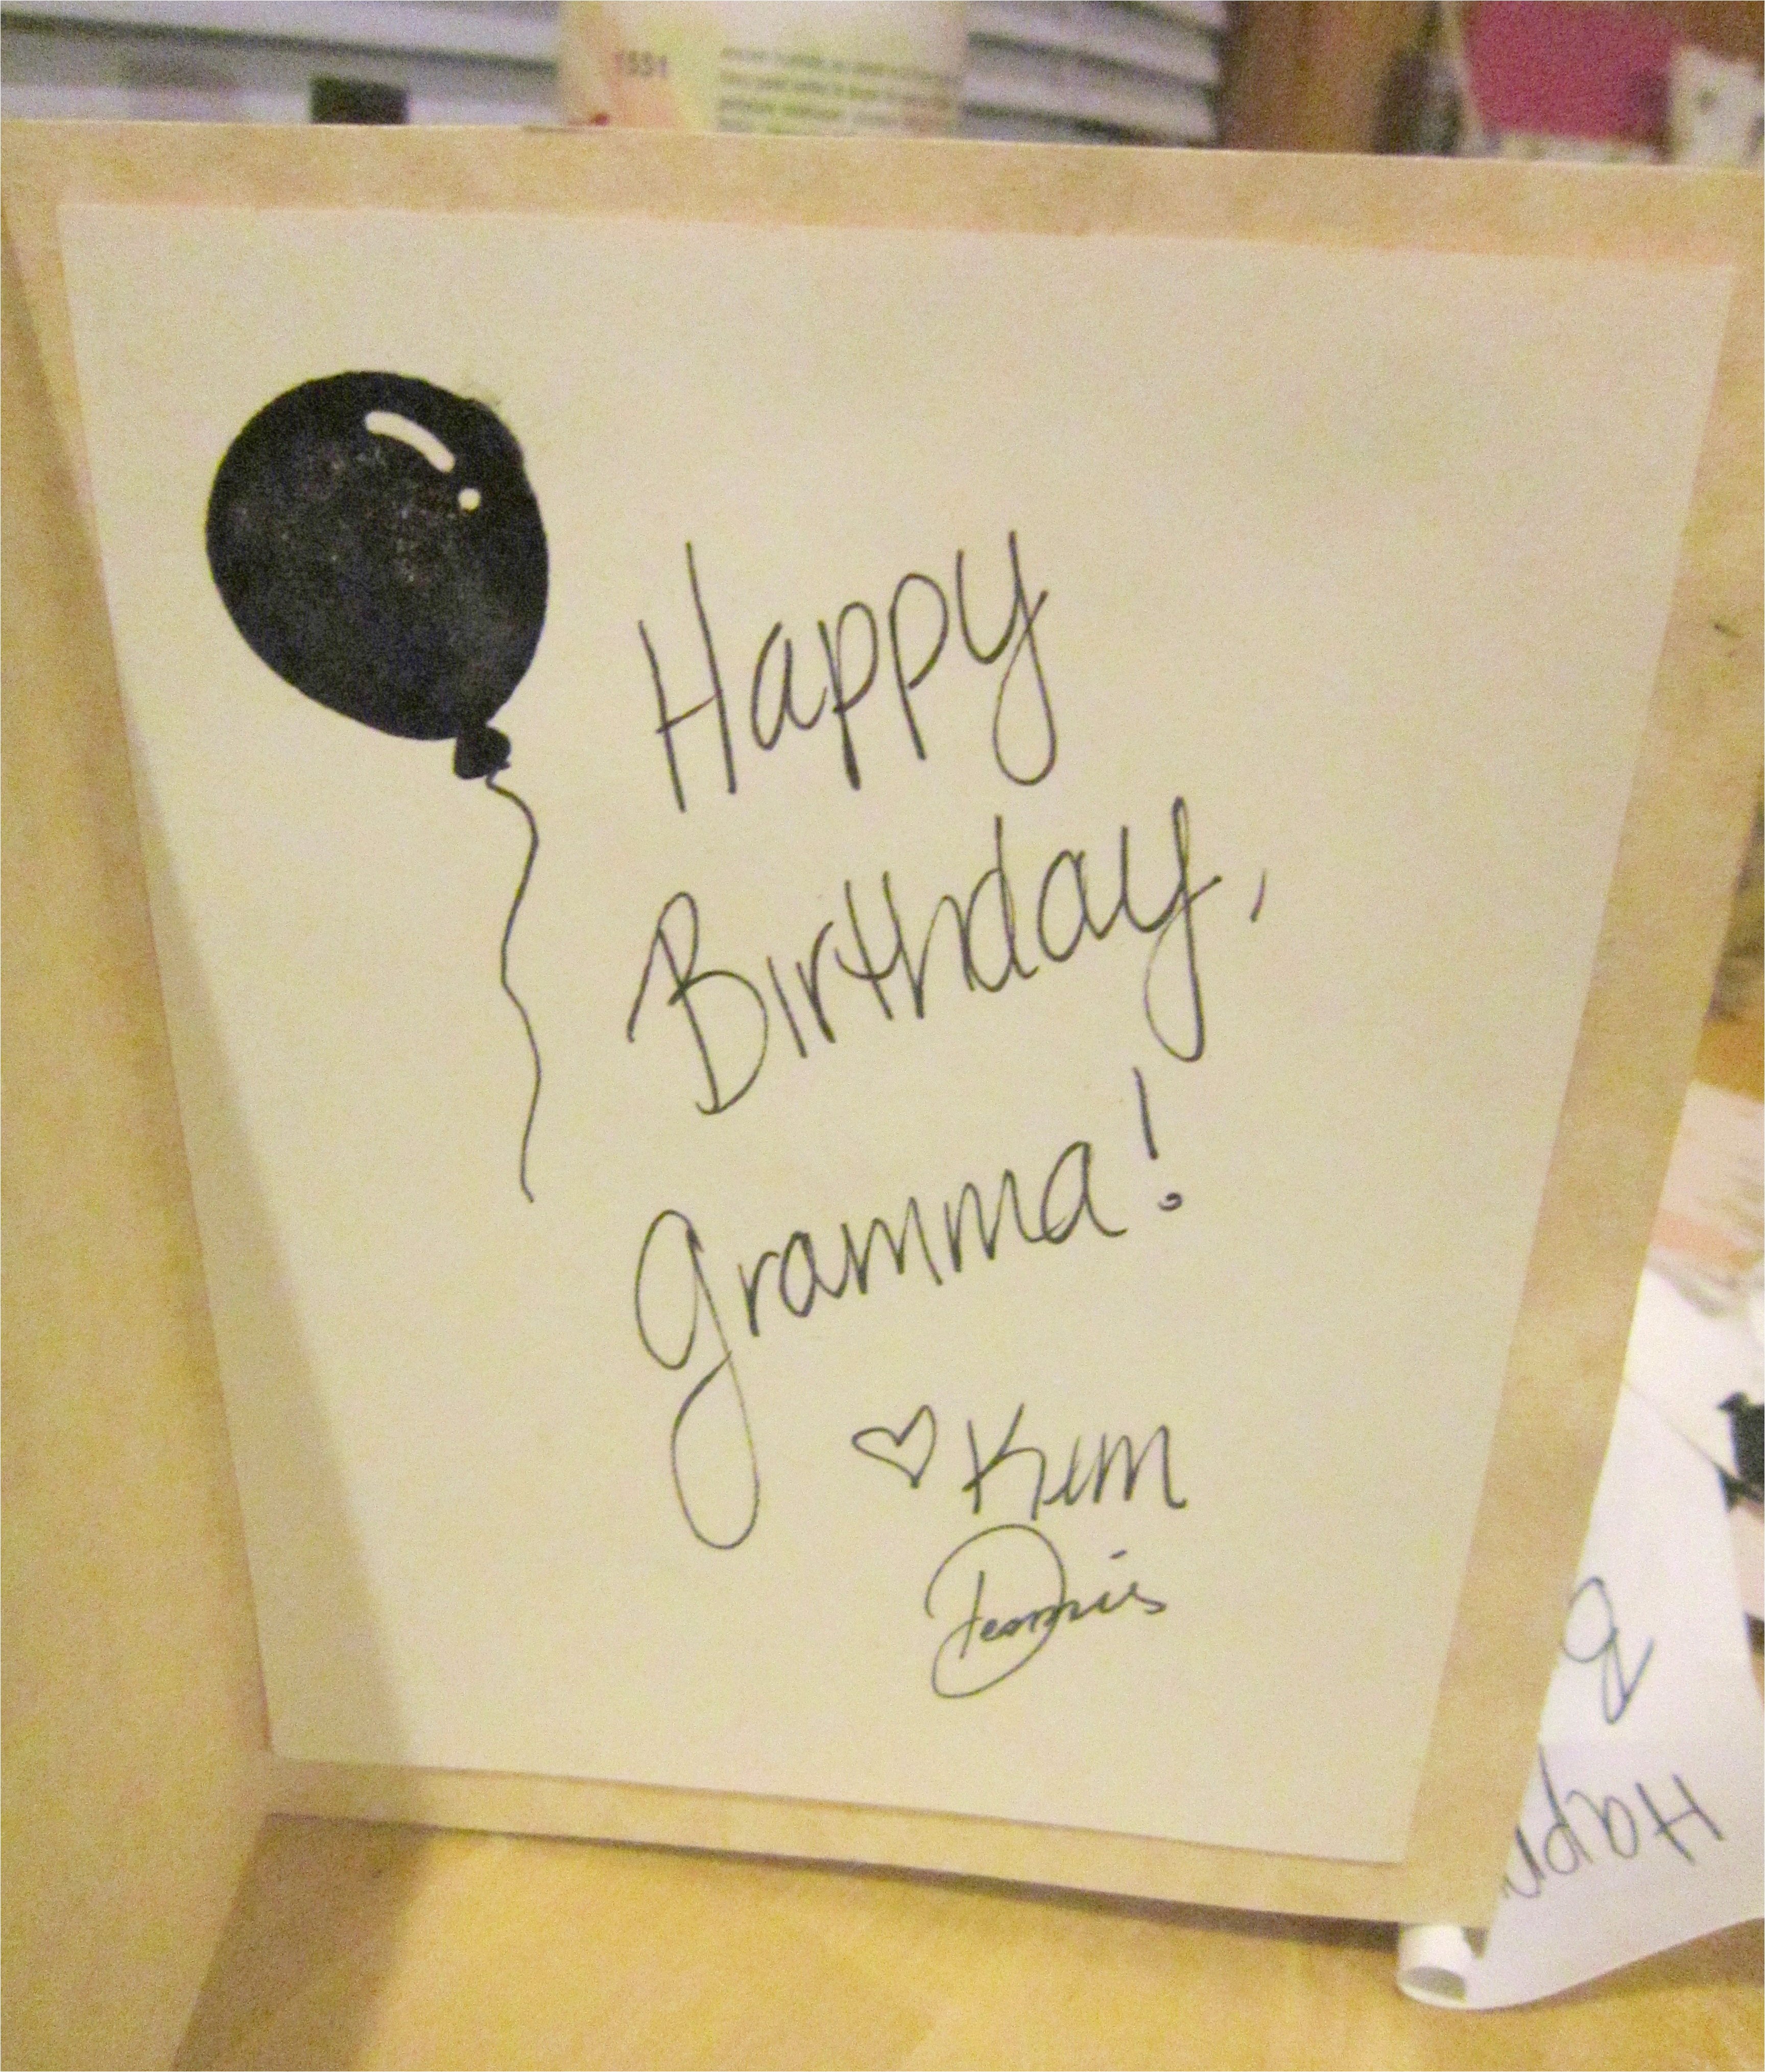 Birthday Card Ideas For Grandma Diy Birthday Card Ideas For Grandma The Perfect Cool Grandma